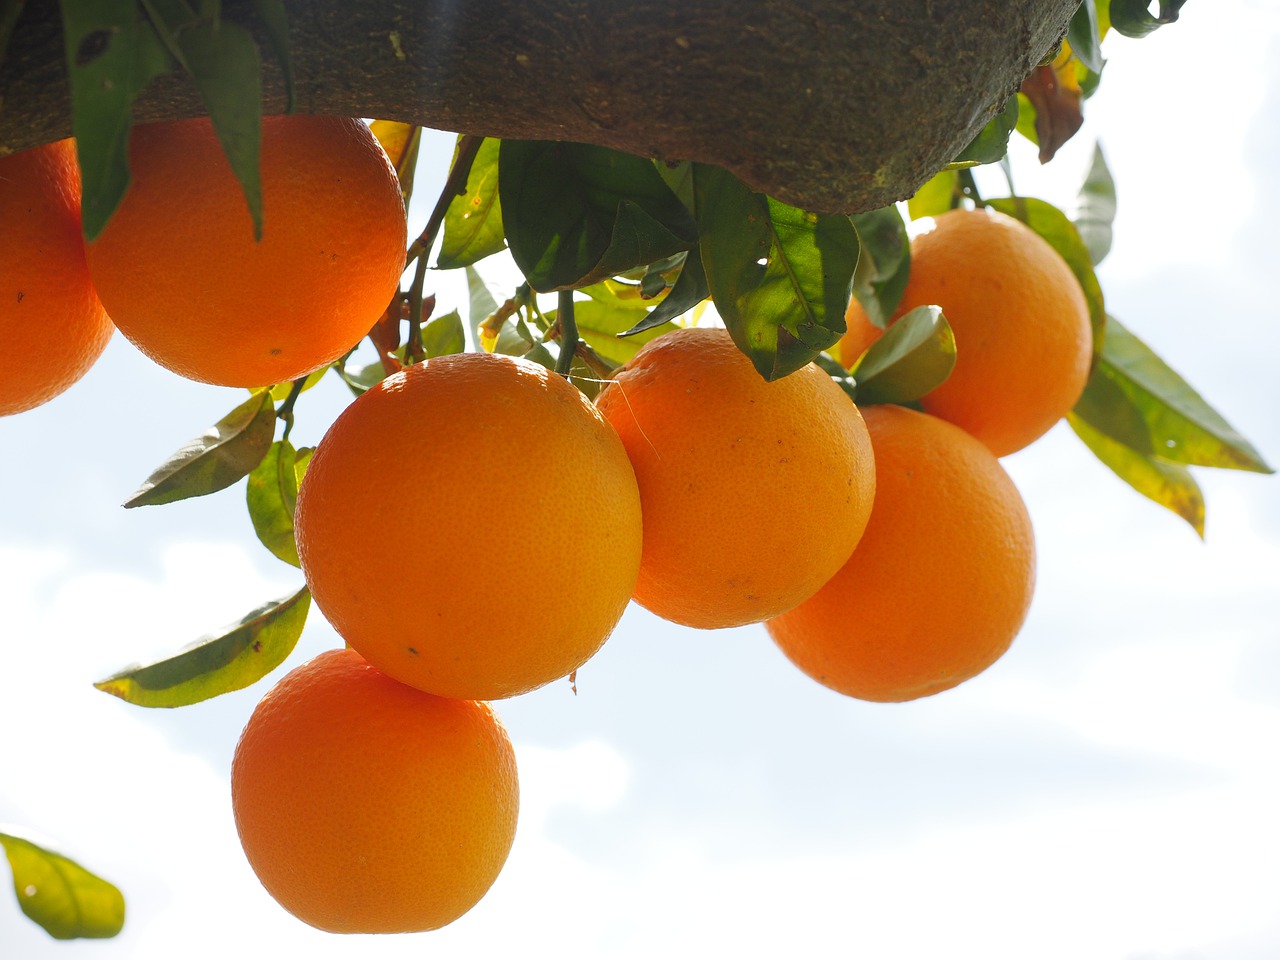 Ειδήσεις και πληροφορίες σχετικά με τα εσπεριδοειδή (πορτοκαλιές, μανταρινιές, λεμονιές, γκρέιπφρουτ), την καλλιέργεια και τα προϊόντα τους